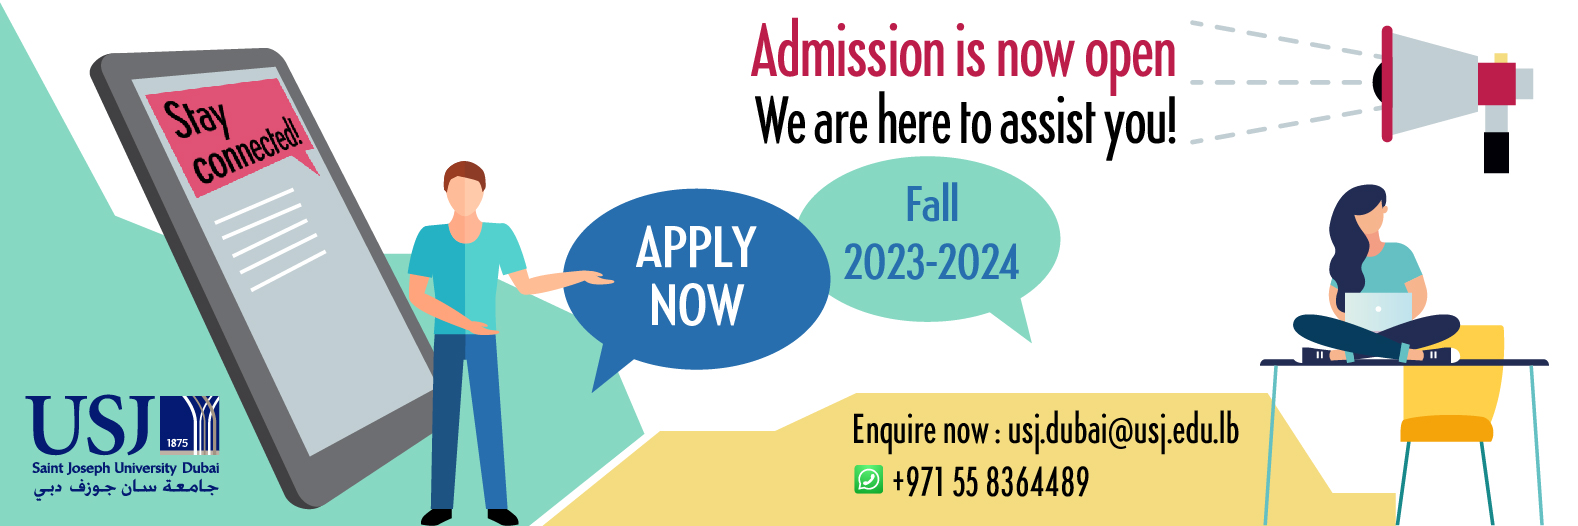 Admission is now open - Saint Joseph University - Dubai